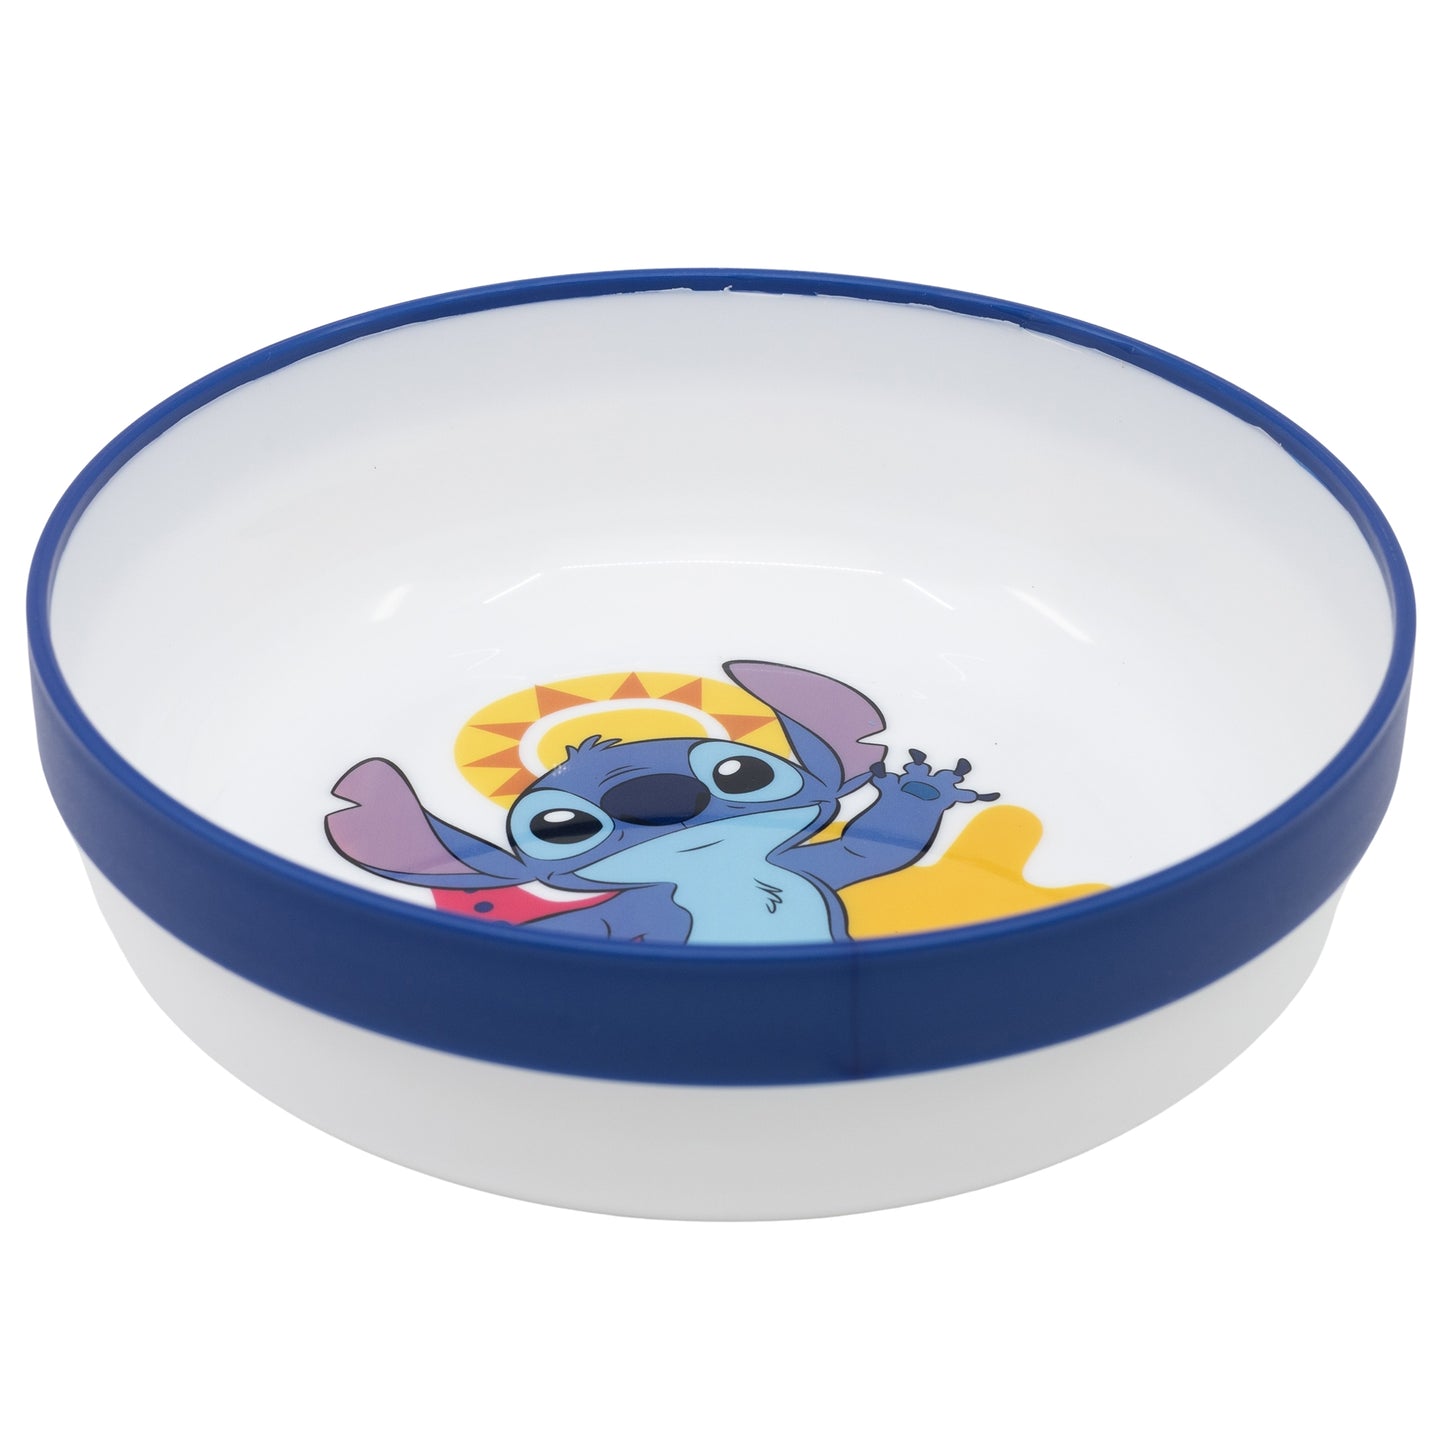 Disney Stitch Kinder Geschirr-Set 3 teilig Becher Teller Schüssel antirutsch